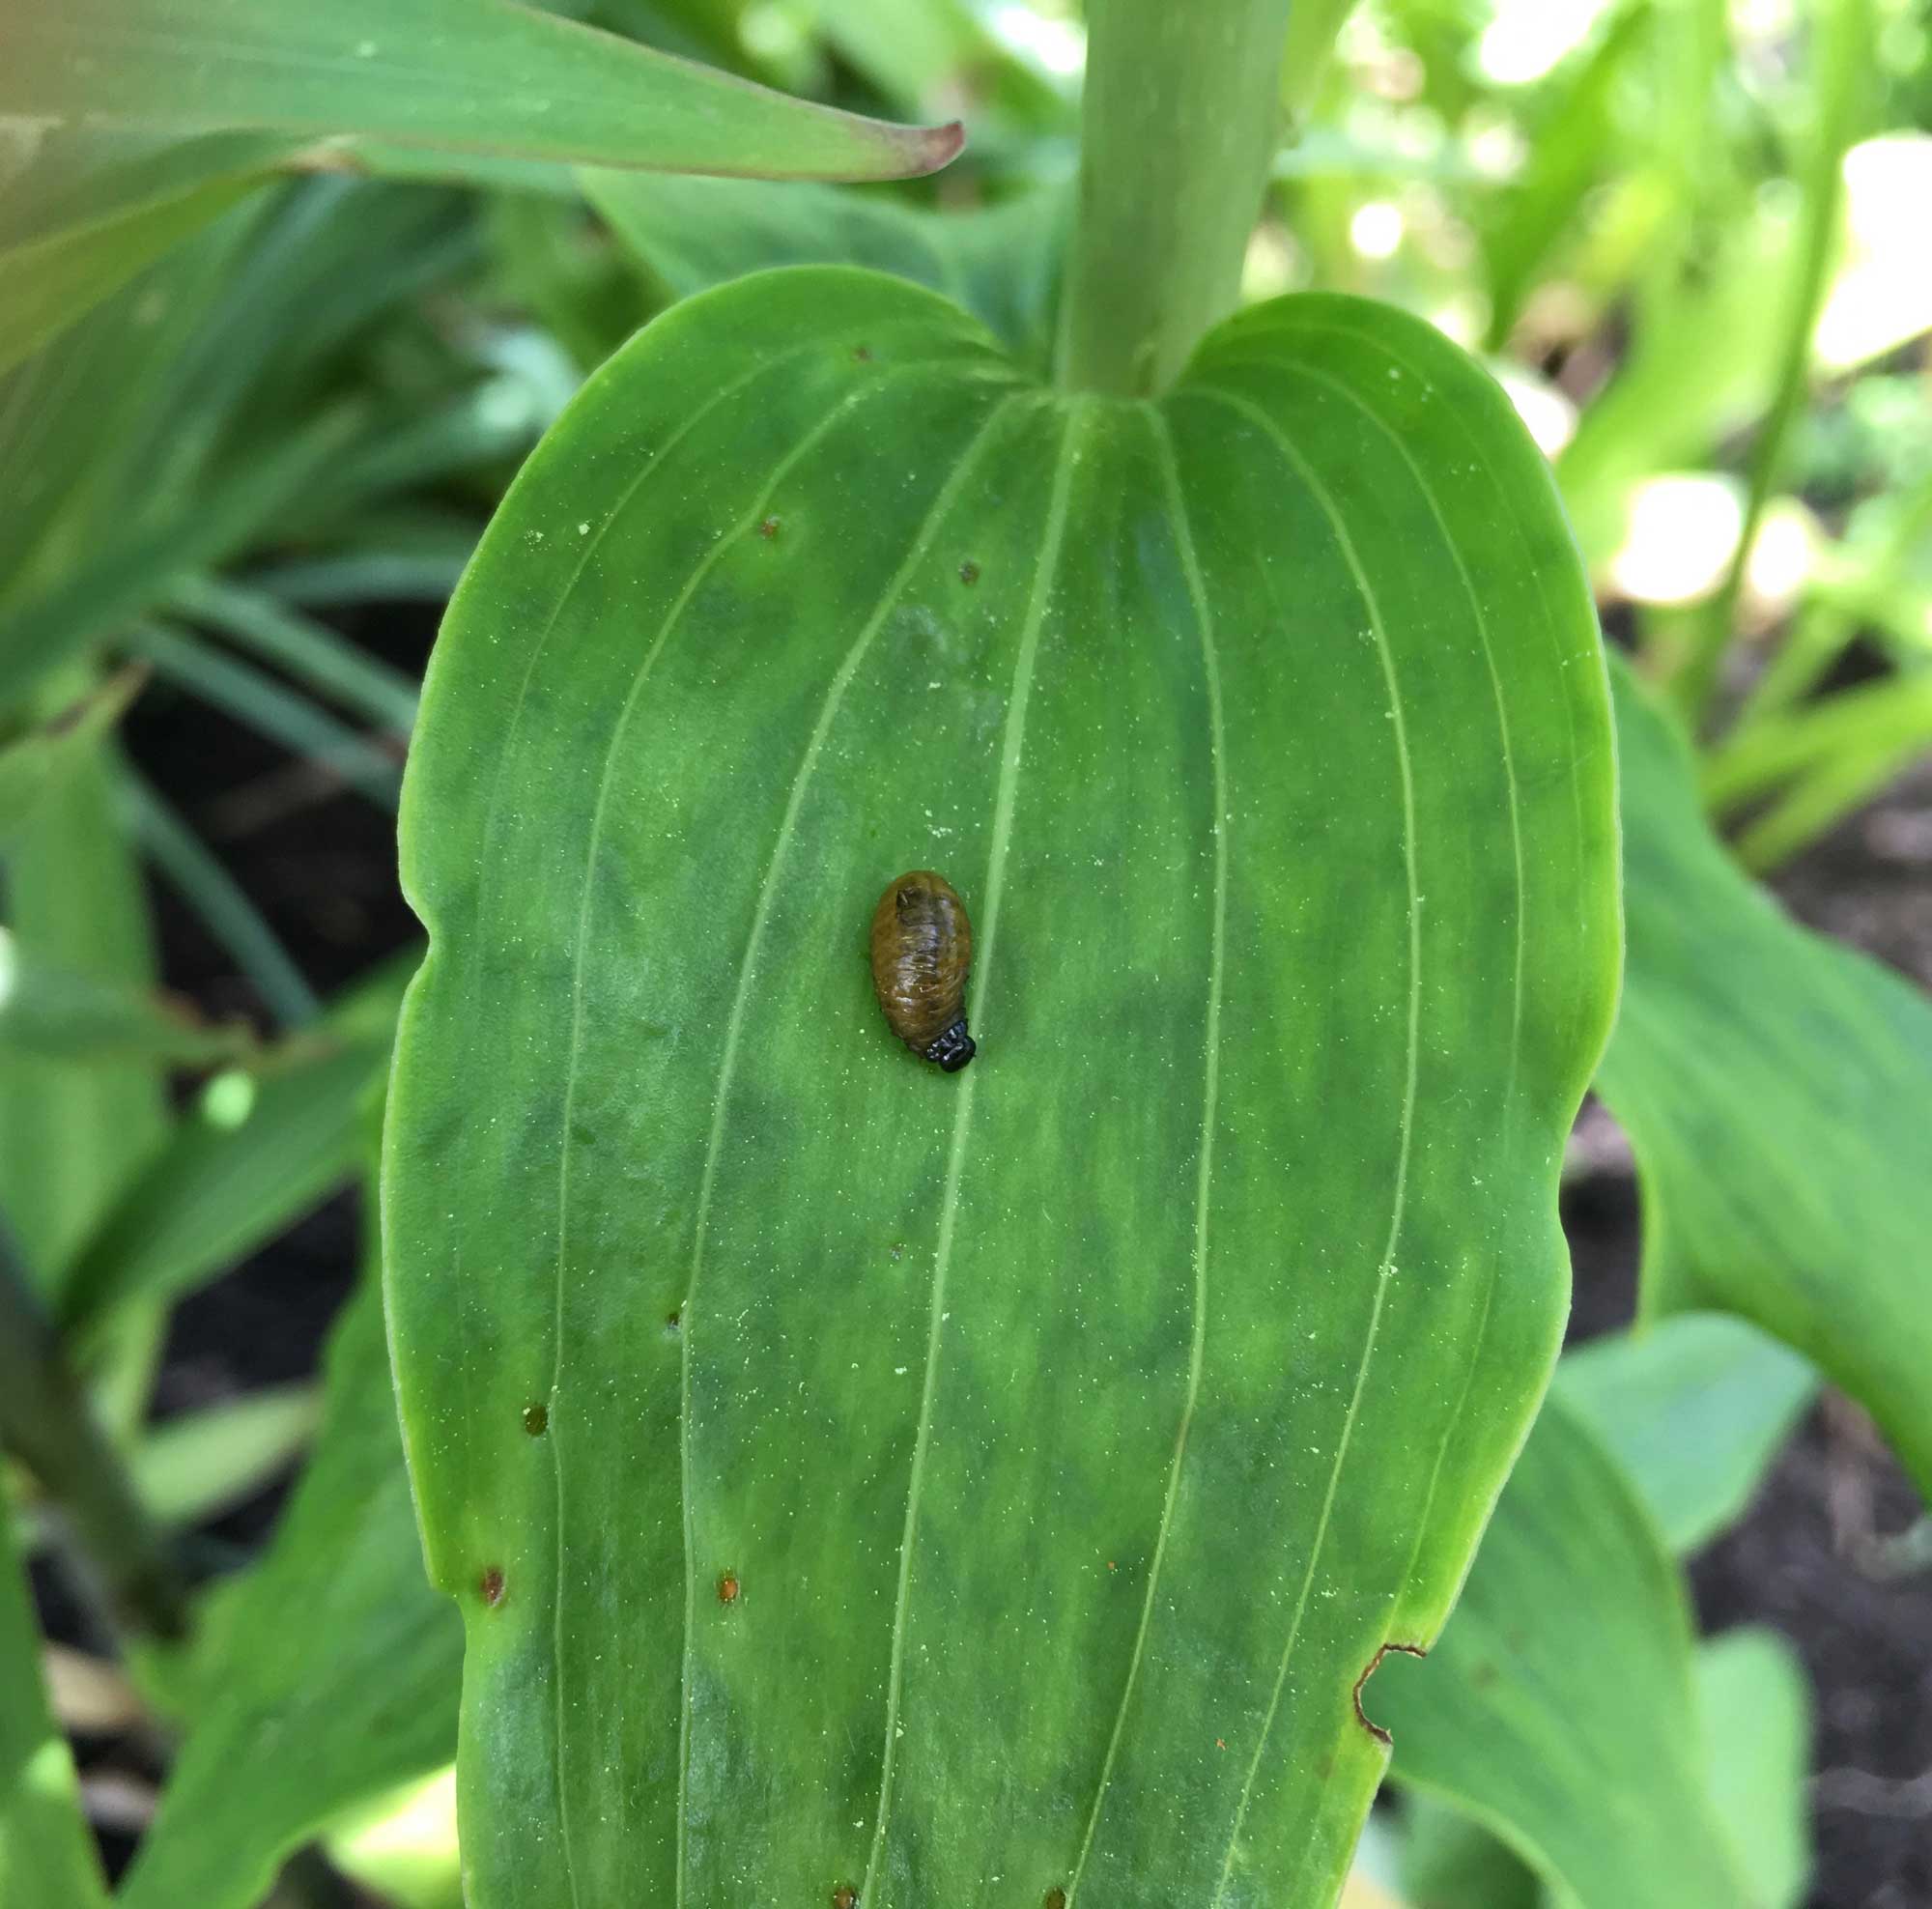 lily-leaf-beetle-larvae.jpg